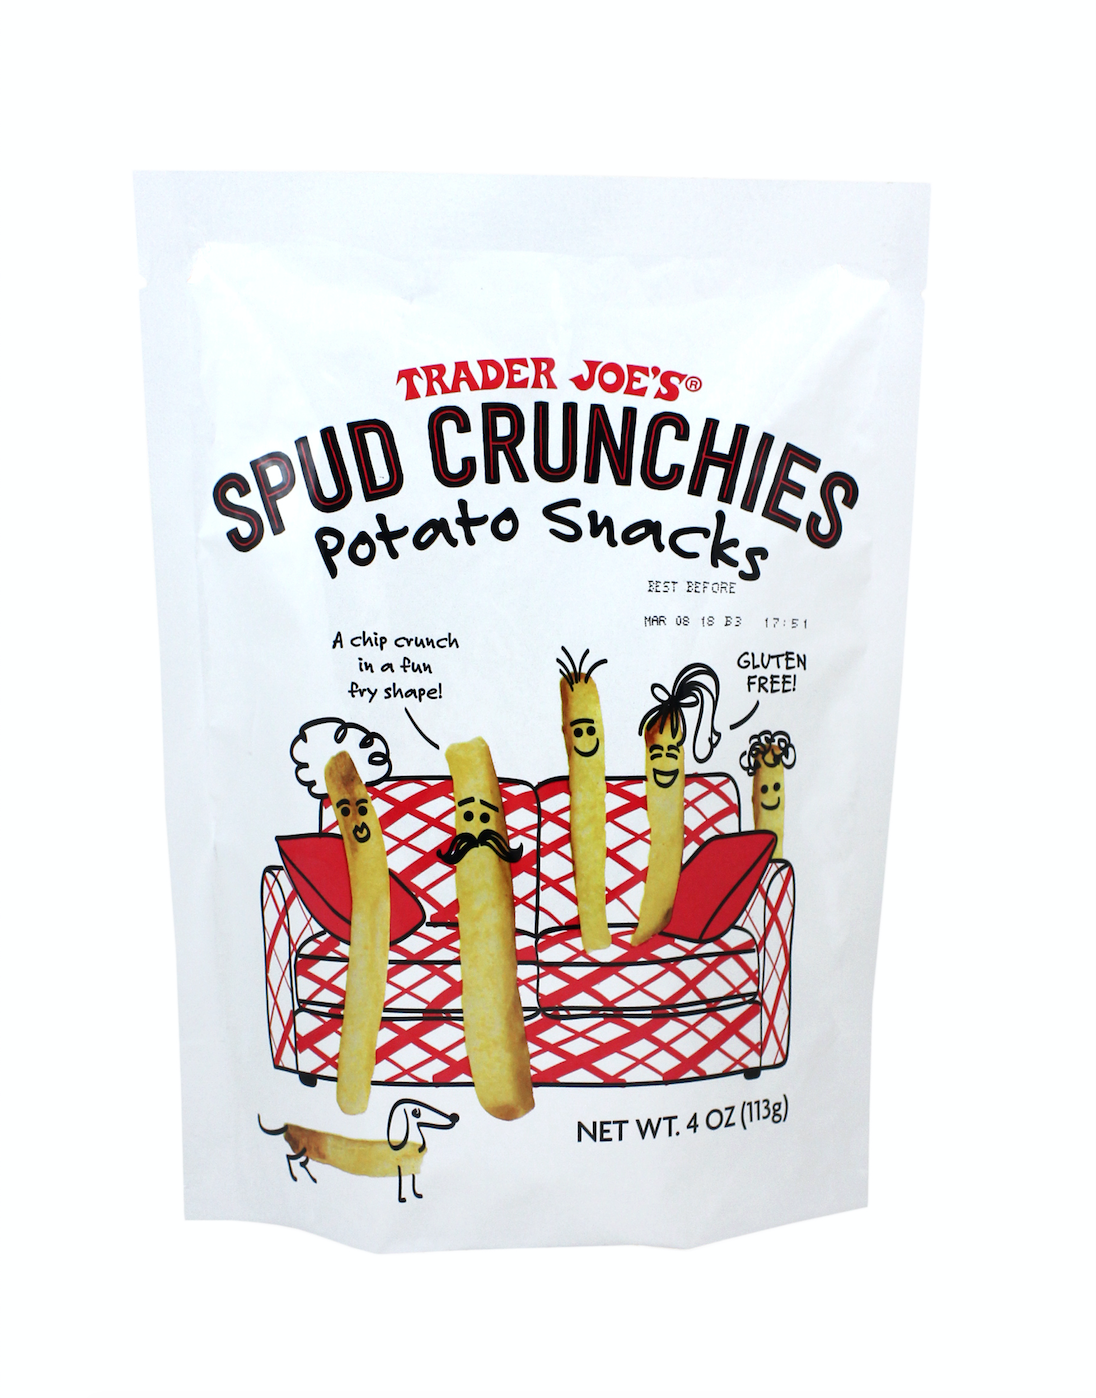 მე გატაცებული ვარ ტრეიდერის ჯო Spud Crunchies- ით და ეს ხდება პრობლემა